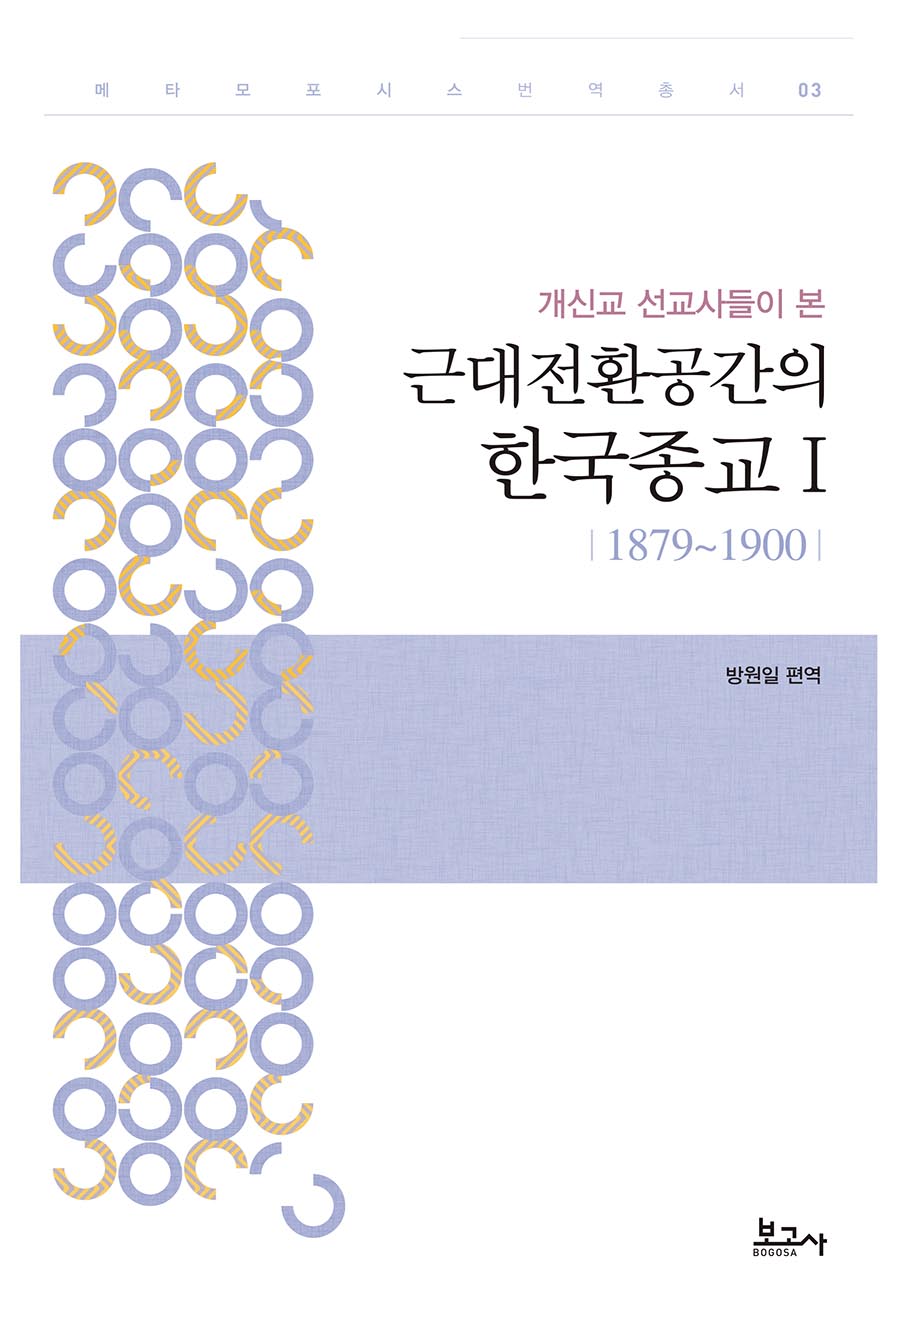 개신교 선교사들이 본 근대전환공간의 한국종교 Ⅰ(1879~1900)